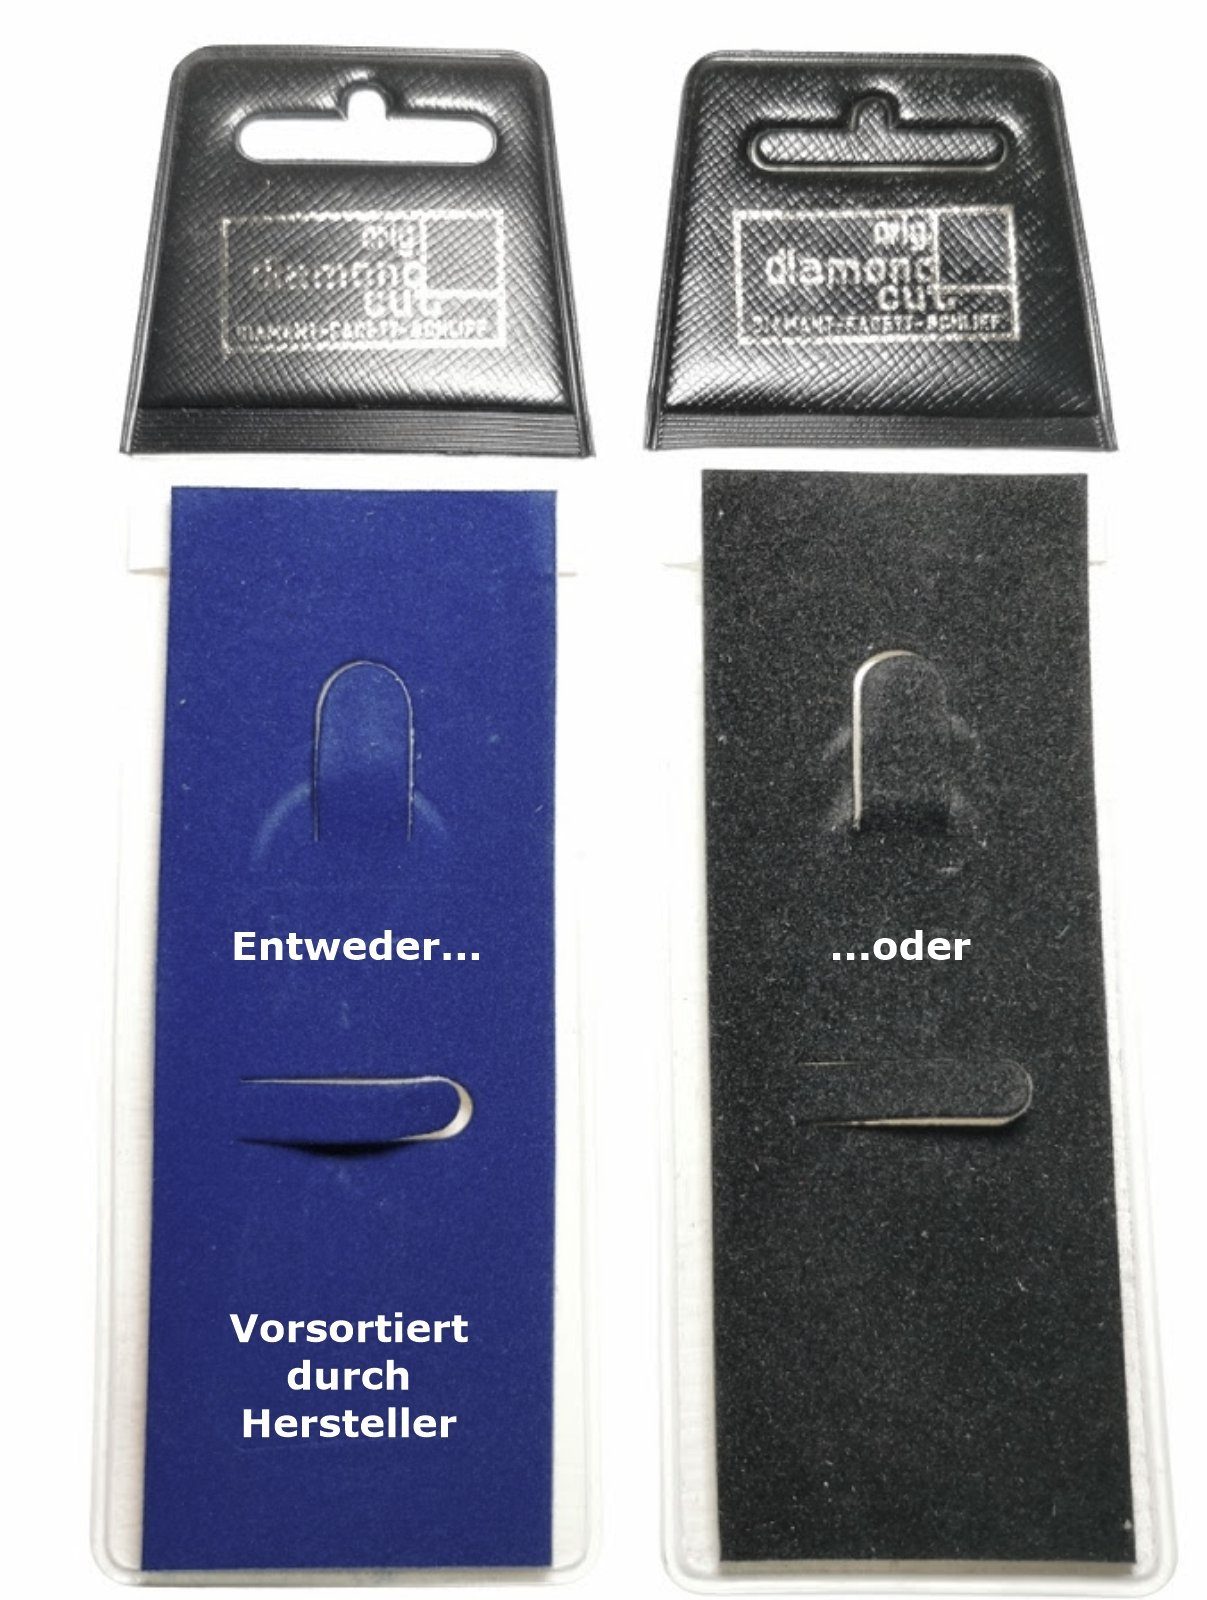 HR Diamantschliff AUSTIN Schlüsselanhänger Autocomfort Metall 1954 MOTOR Schlüsselsammler Co. Anhänger aus